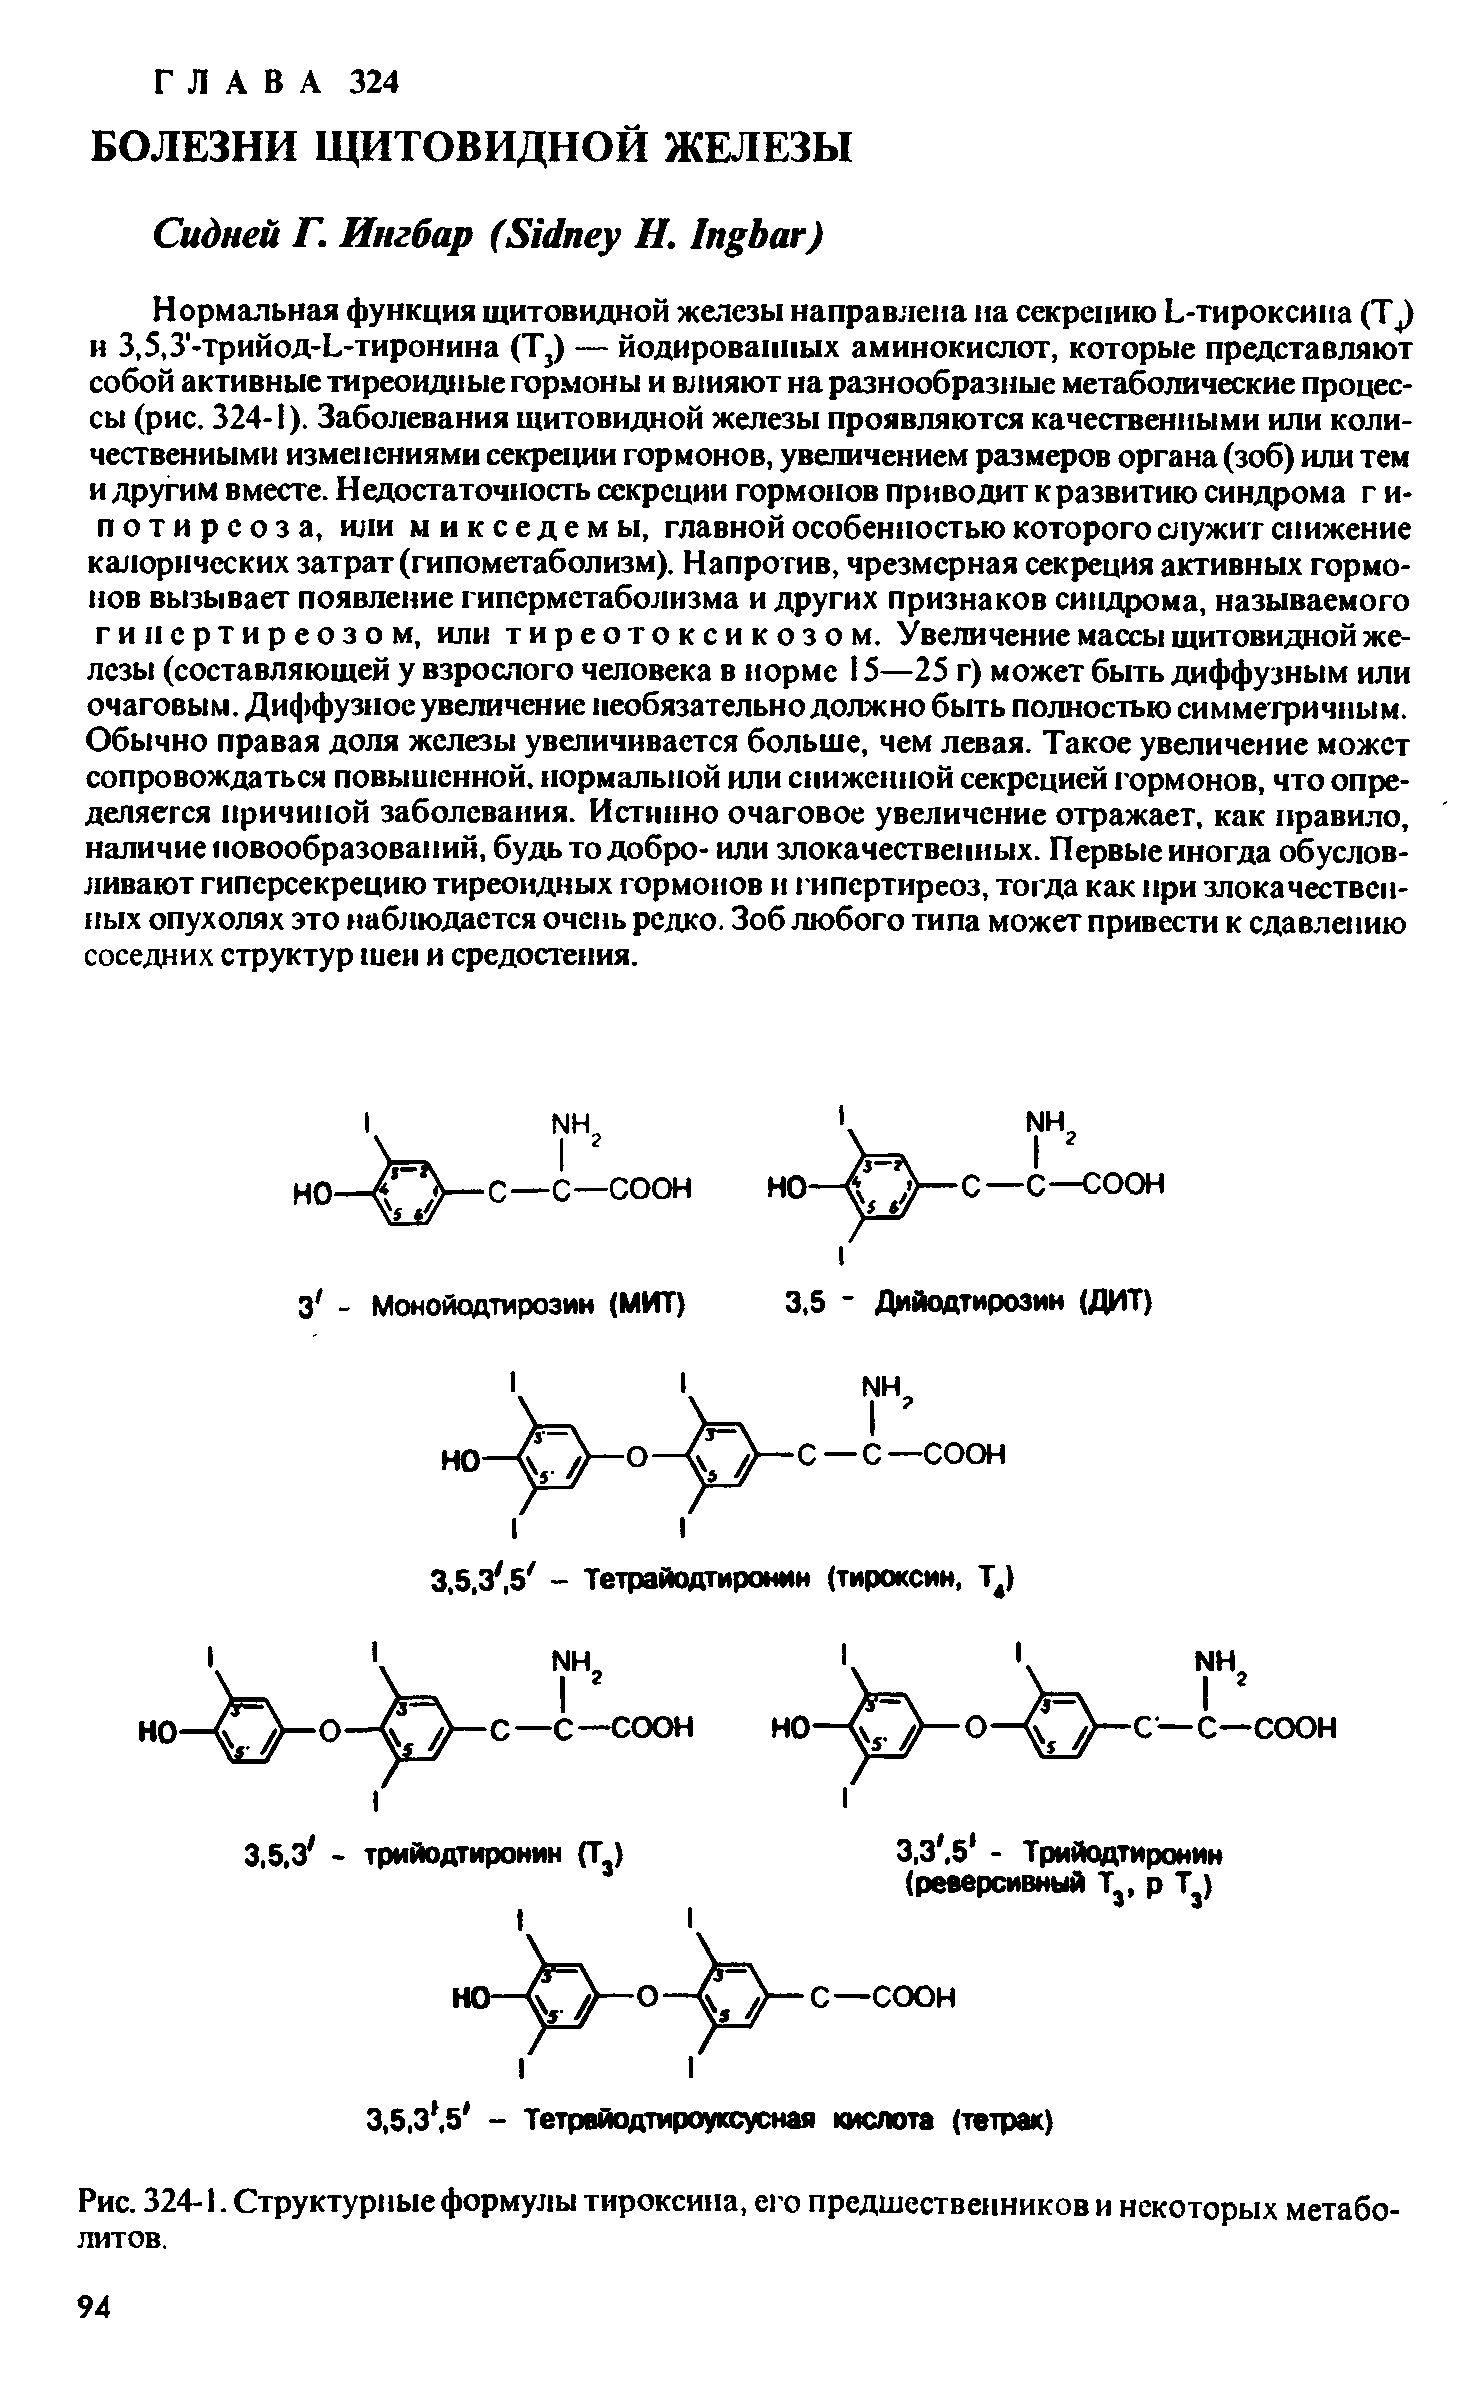 Рис. 324-1. Структурные формулы тироксина, его предшественников и некоторых метаболитов.